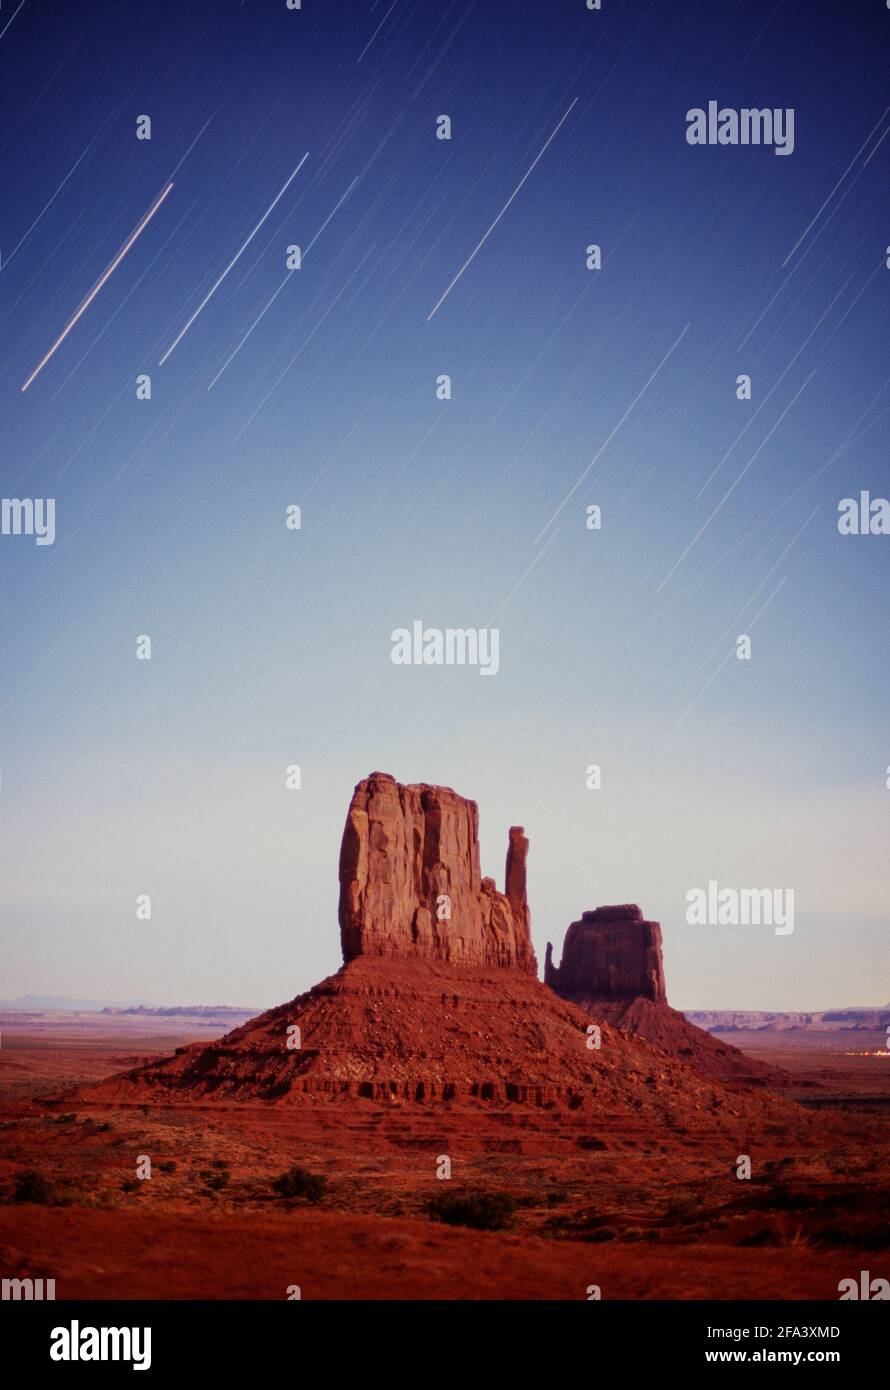 Etats-Unis, Arizona, Monument Valley, les étoiles sur la gauche et à droite Mittens Banque D'Images